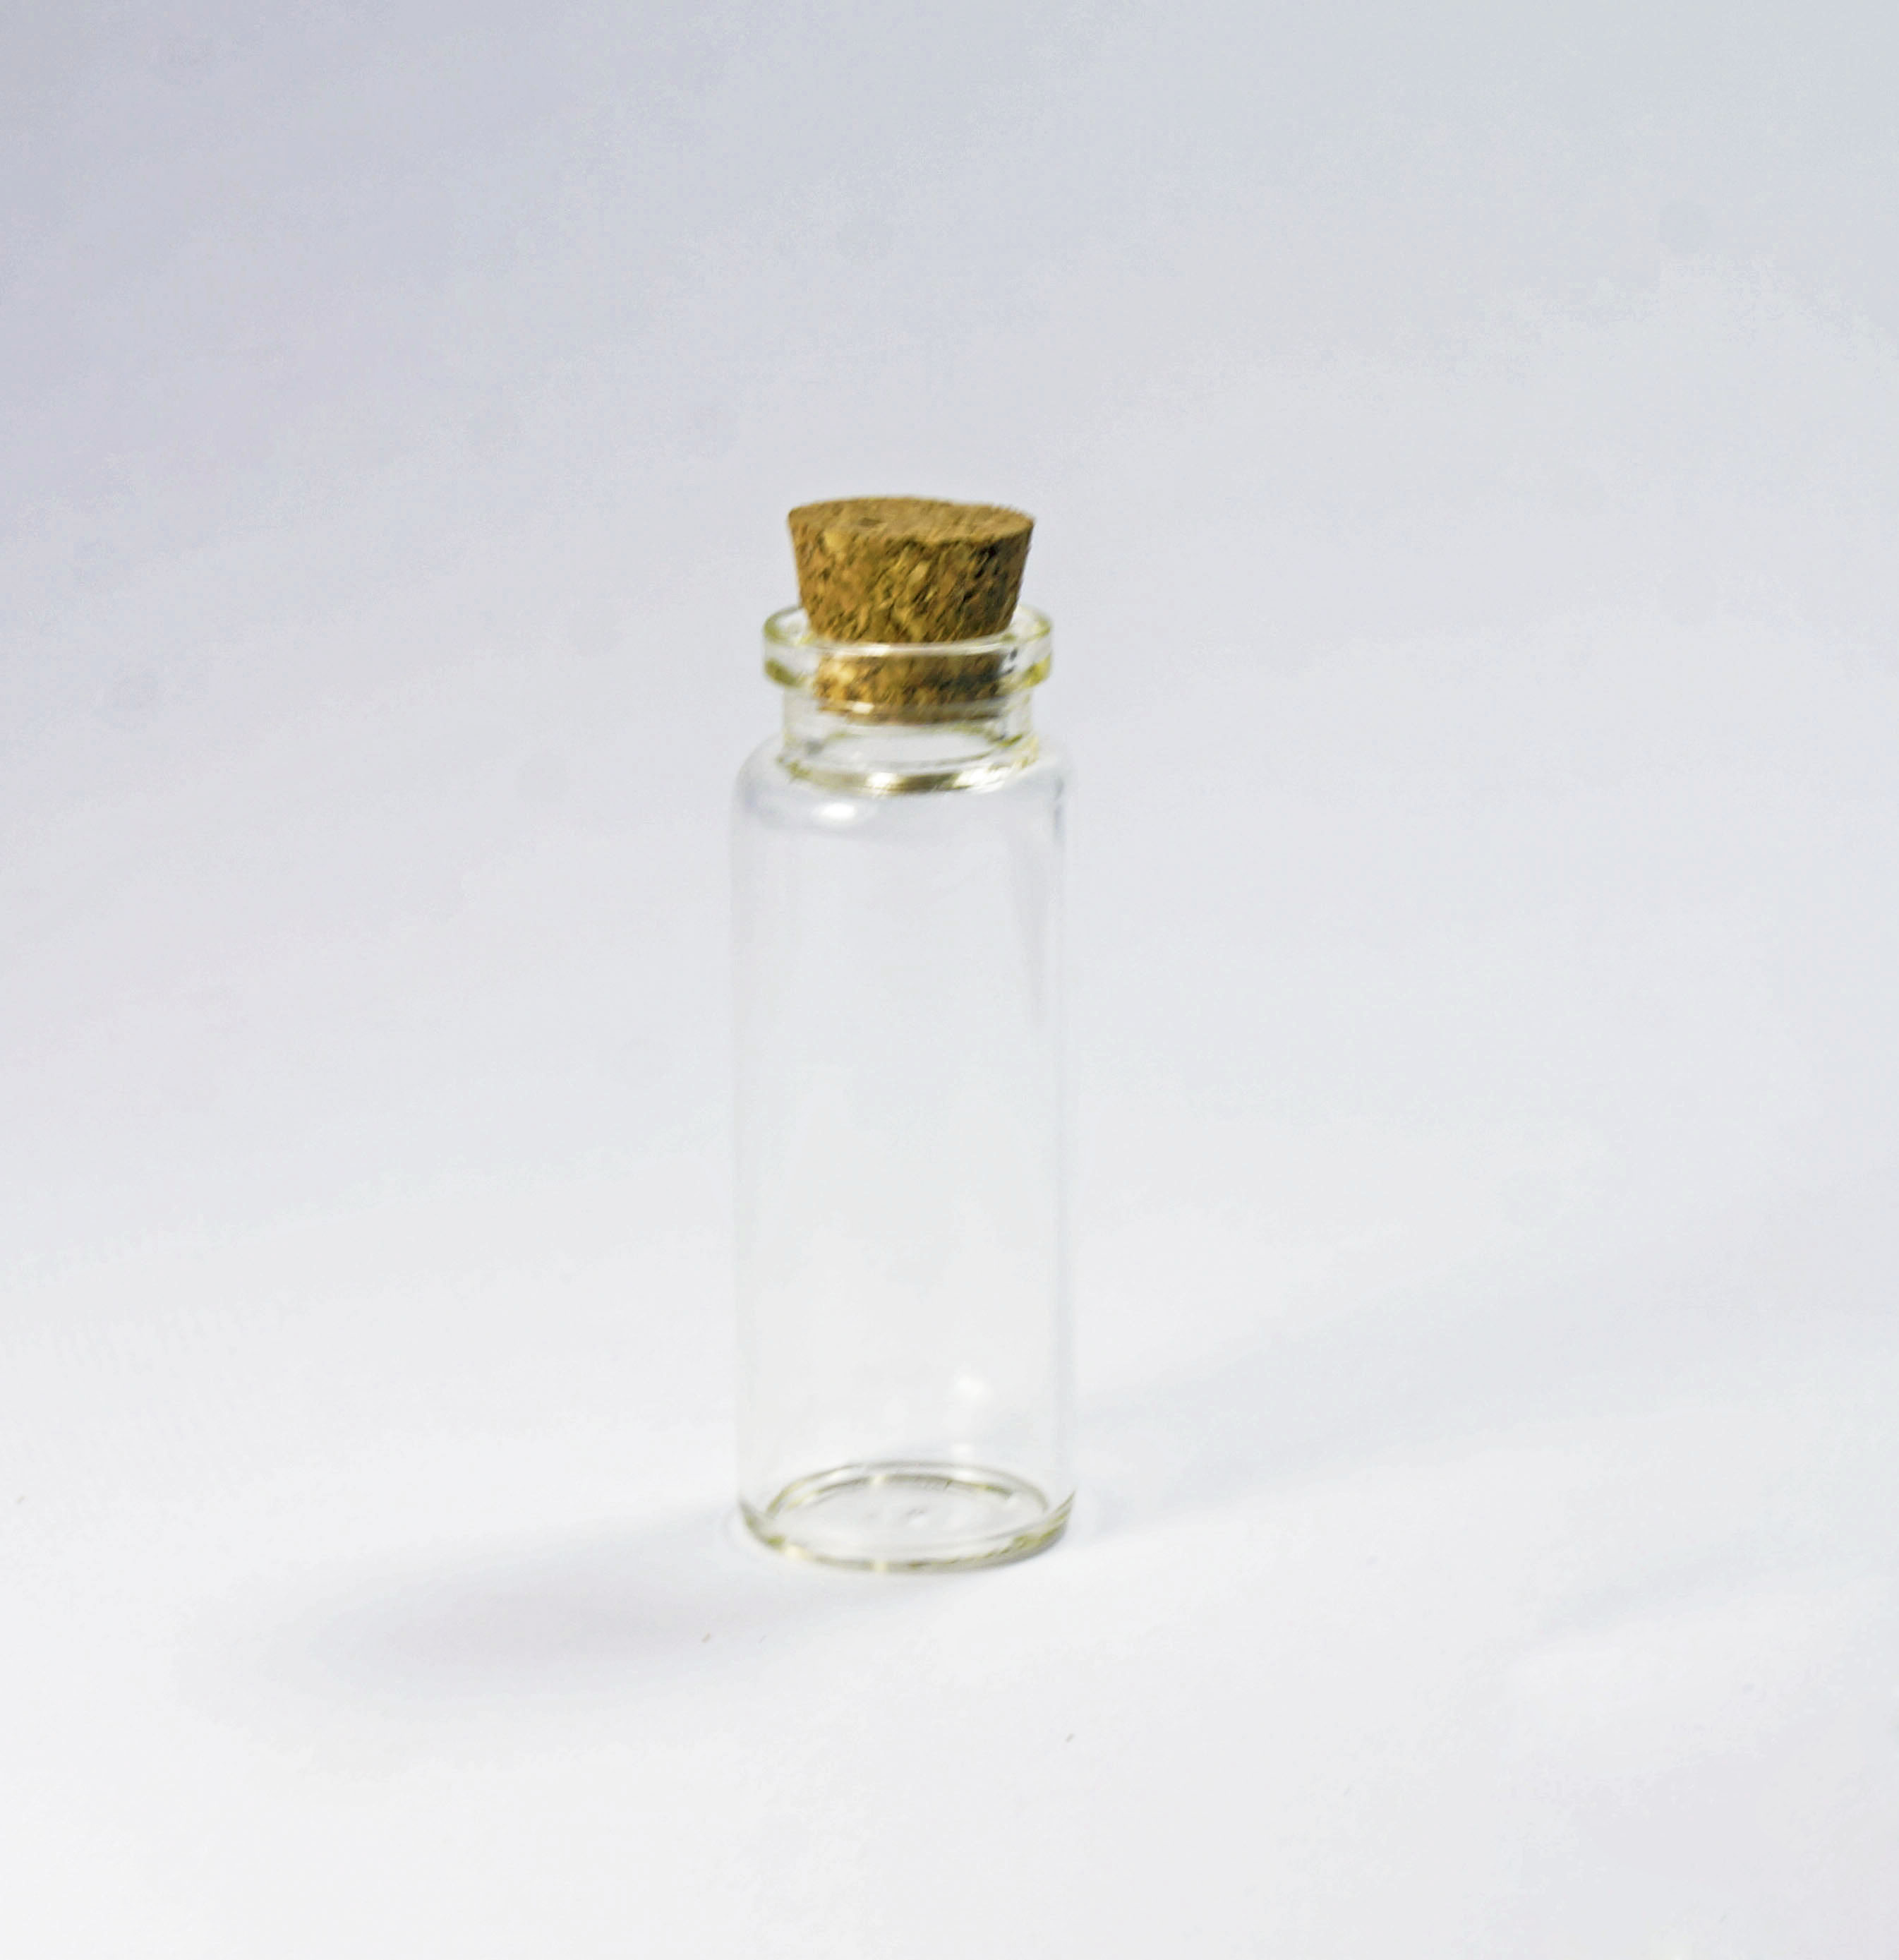 批发1668管制瓶连木塞 卡口许愿瓶装饰工艺